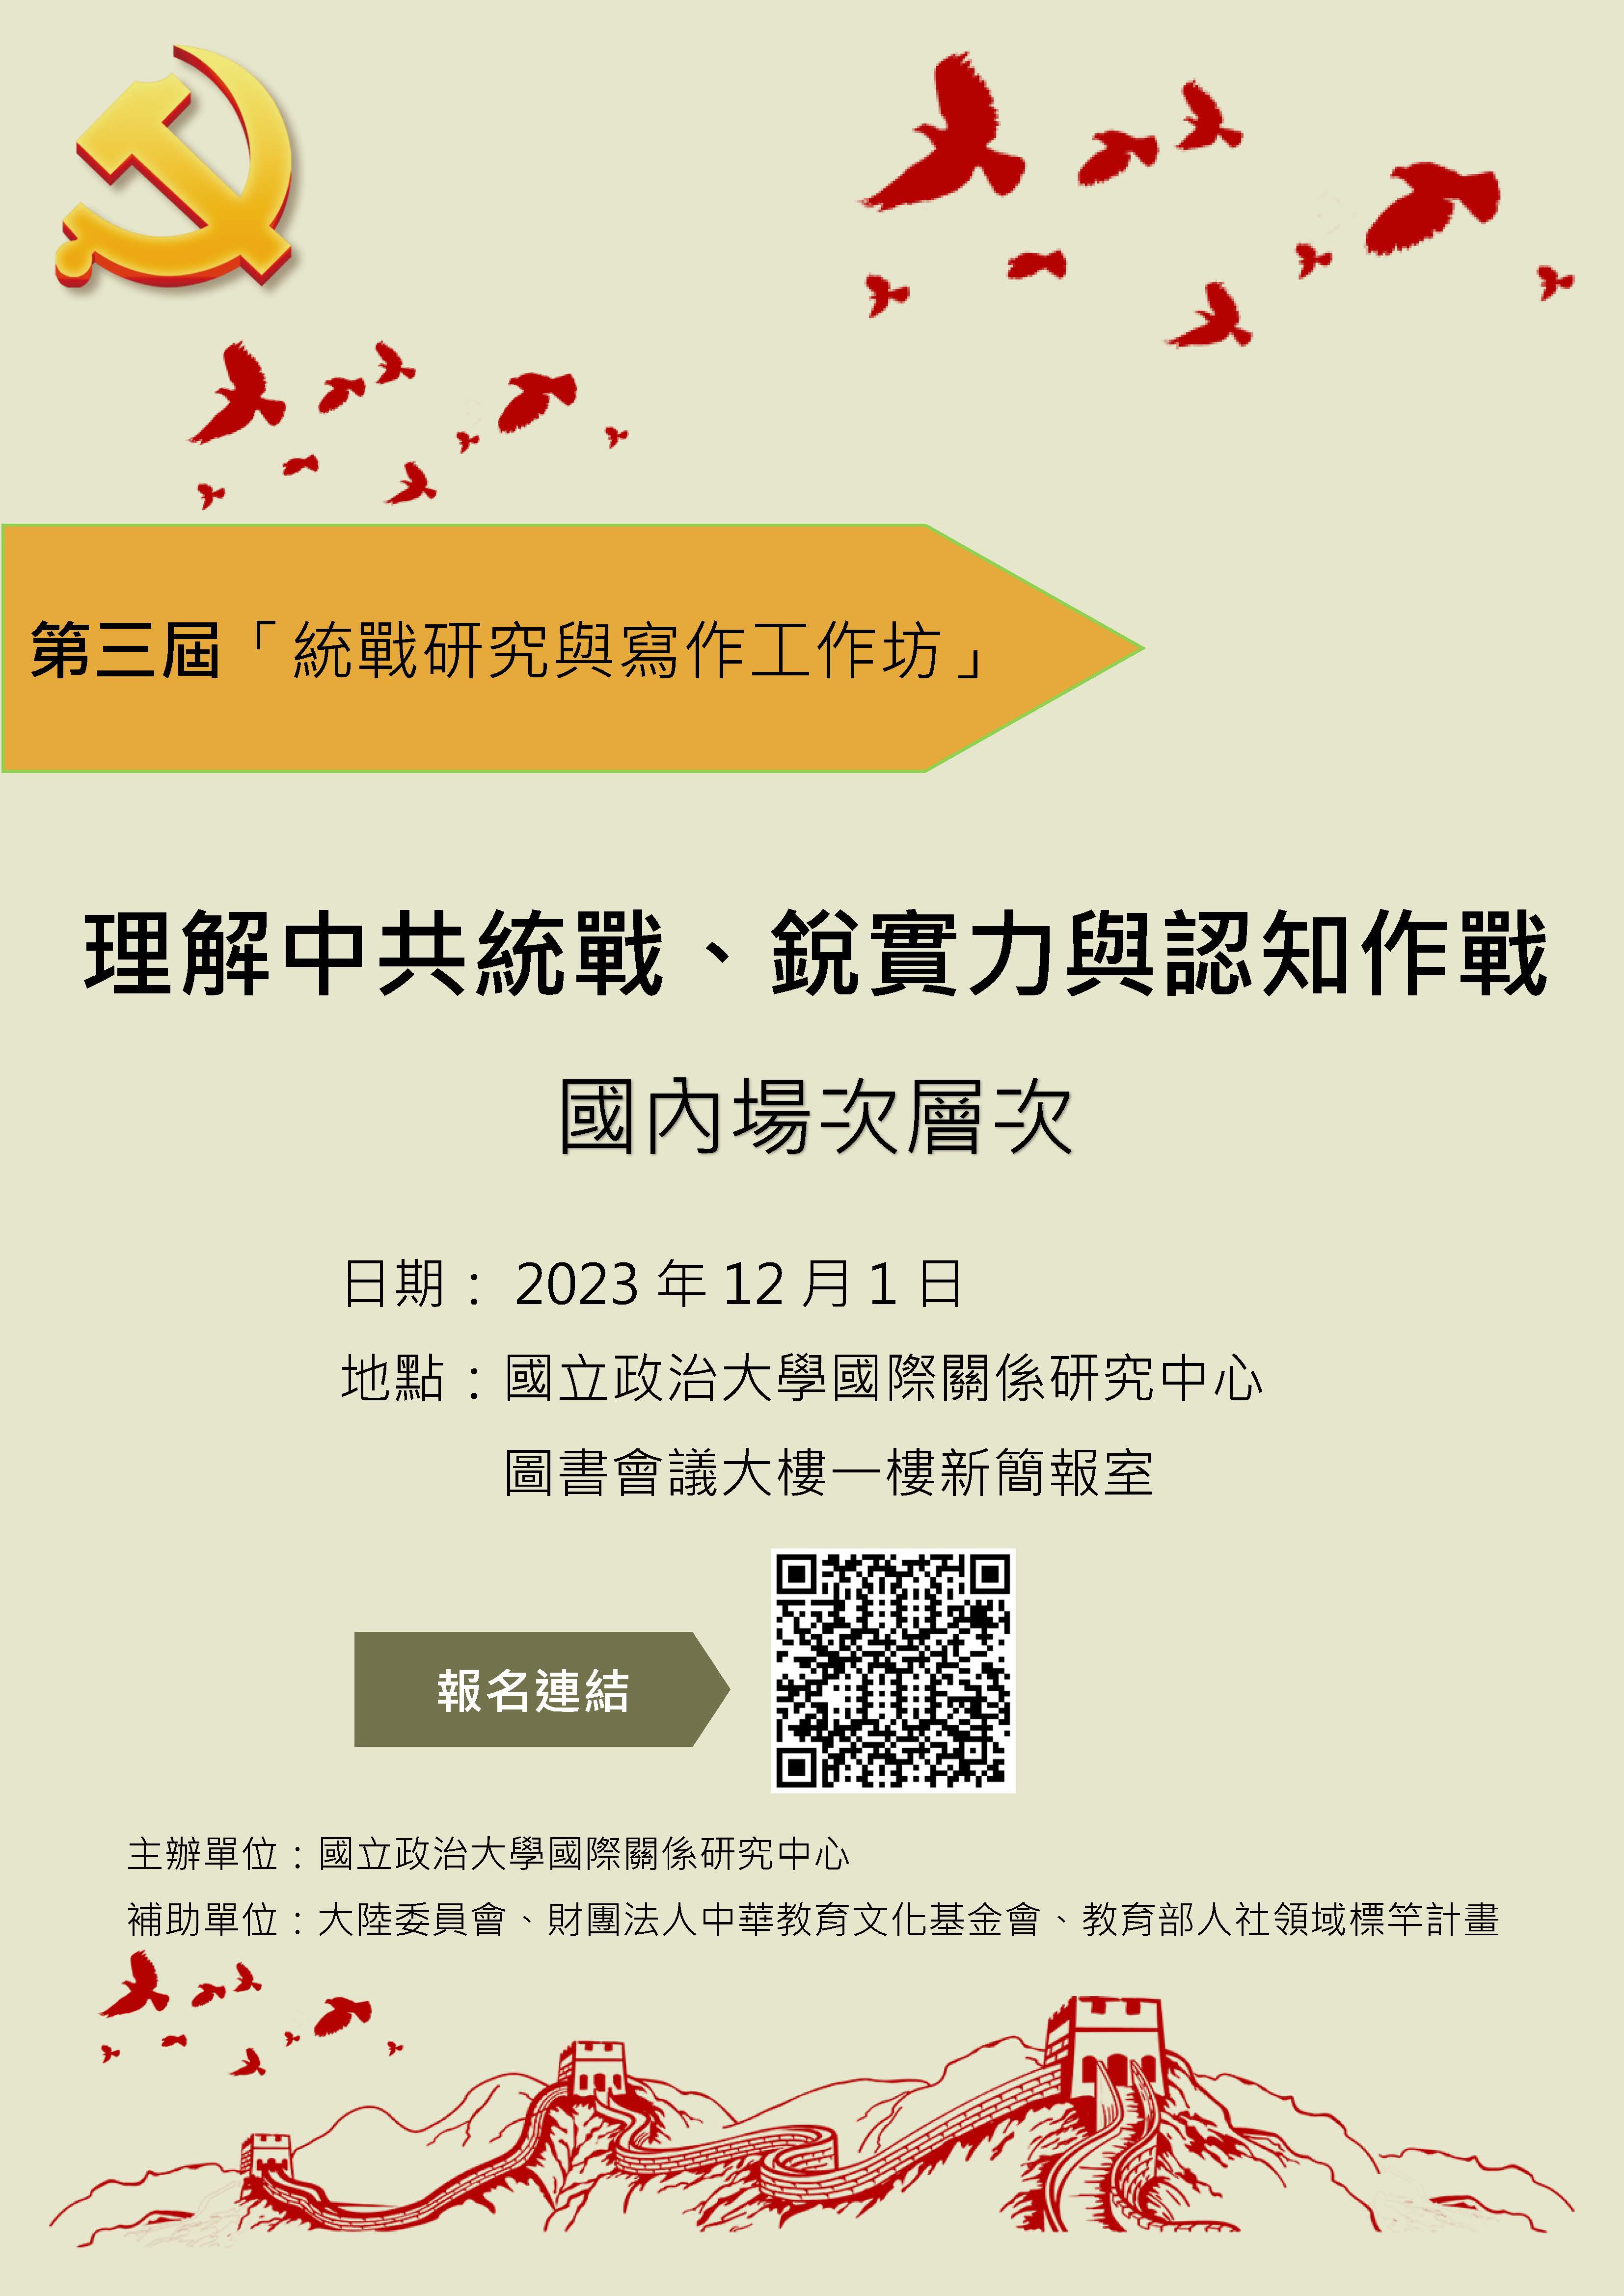 第三屆「理解中國統戰、銳實力與認知作戰」工作坊